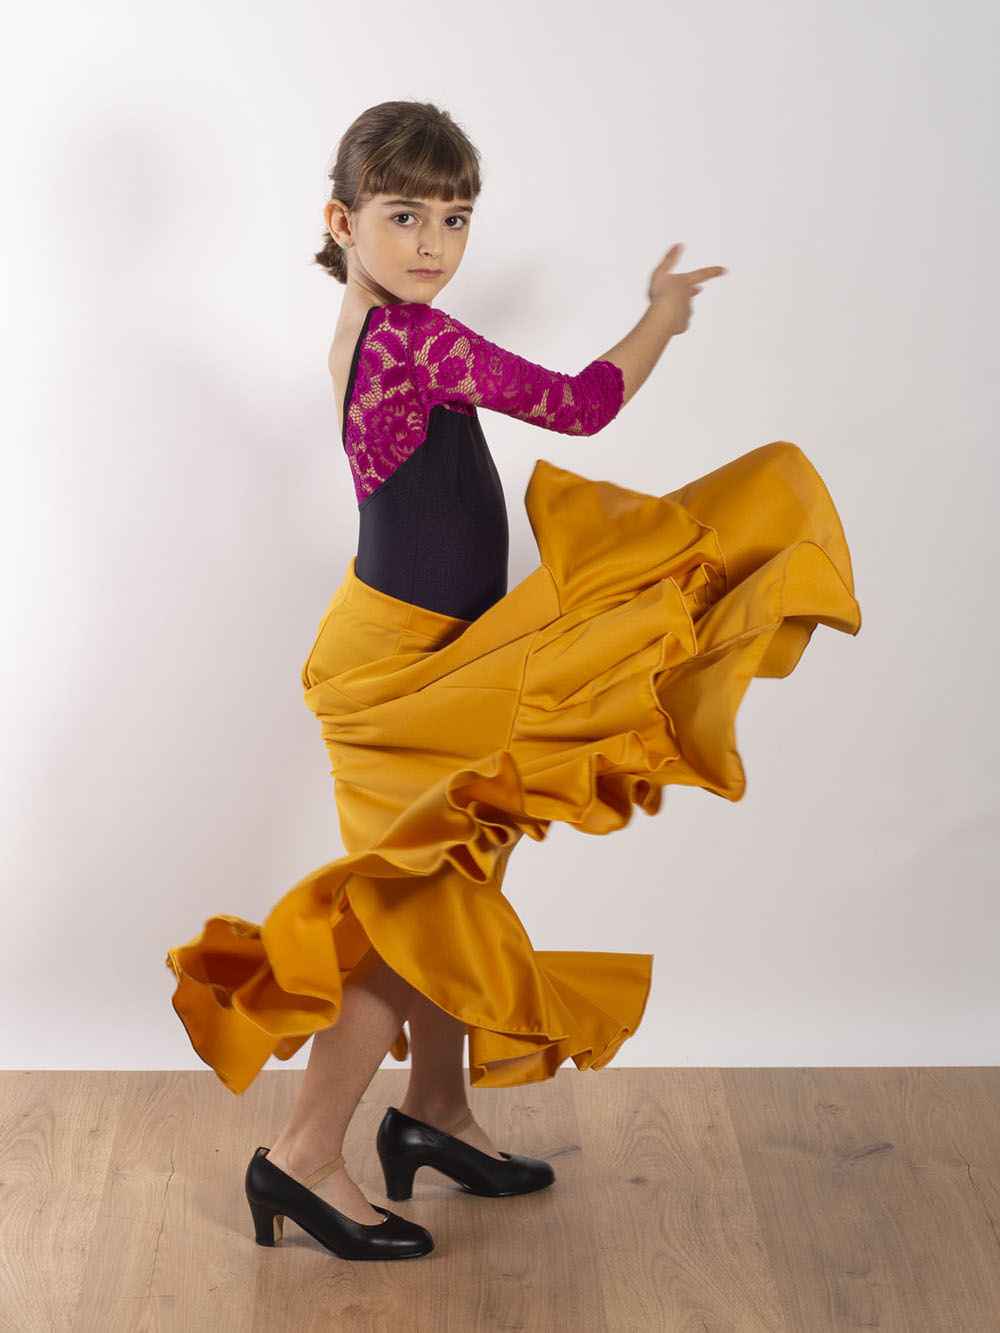 Falda flamenca de ensayo para baile flamenco por solo 30 €